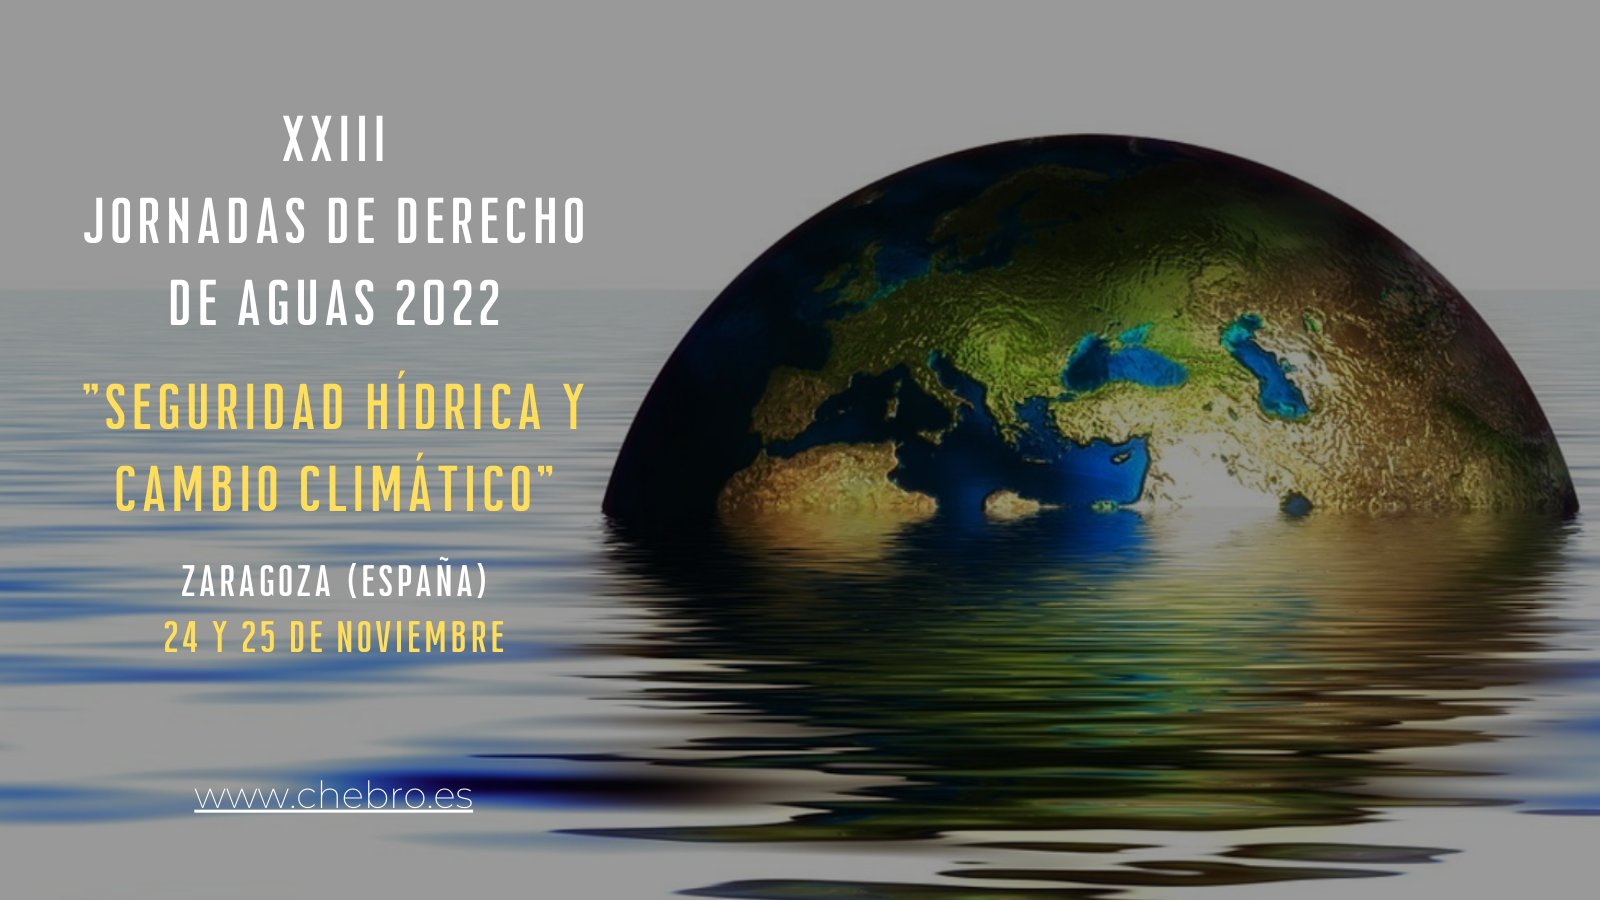 La Confederación Hidrográfica del Ebro y la Universidad de Zaragoza celebran las XXIII Jornadas de Derecho de Aguas “Seguridad hídrica y cambio climático” - Imagen 0